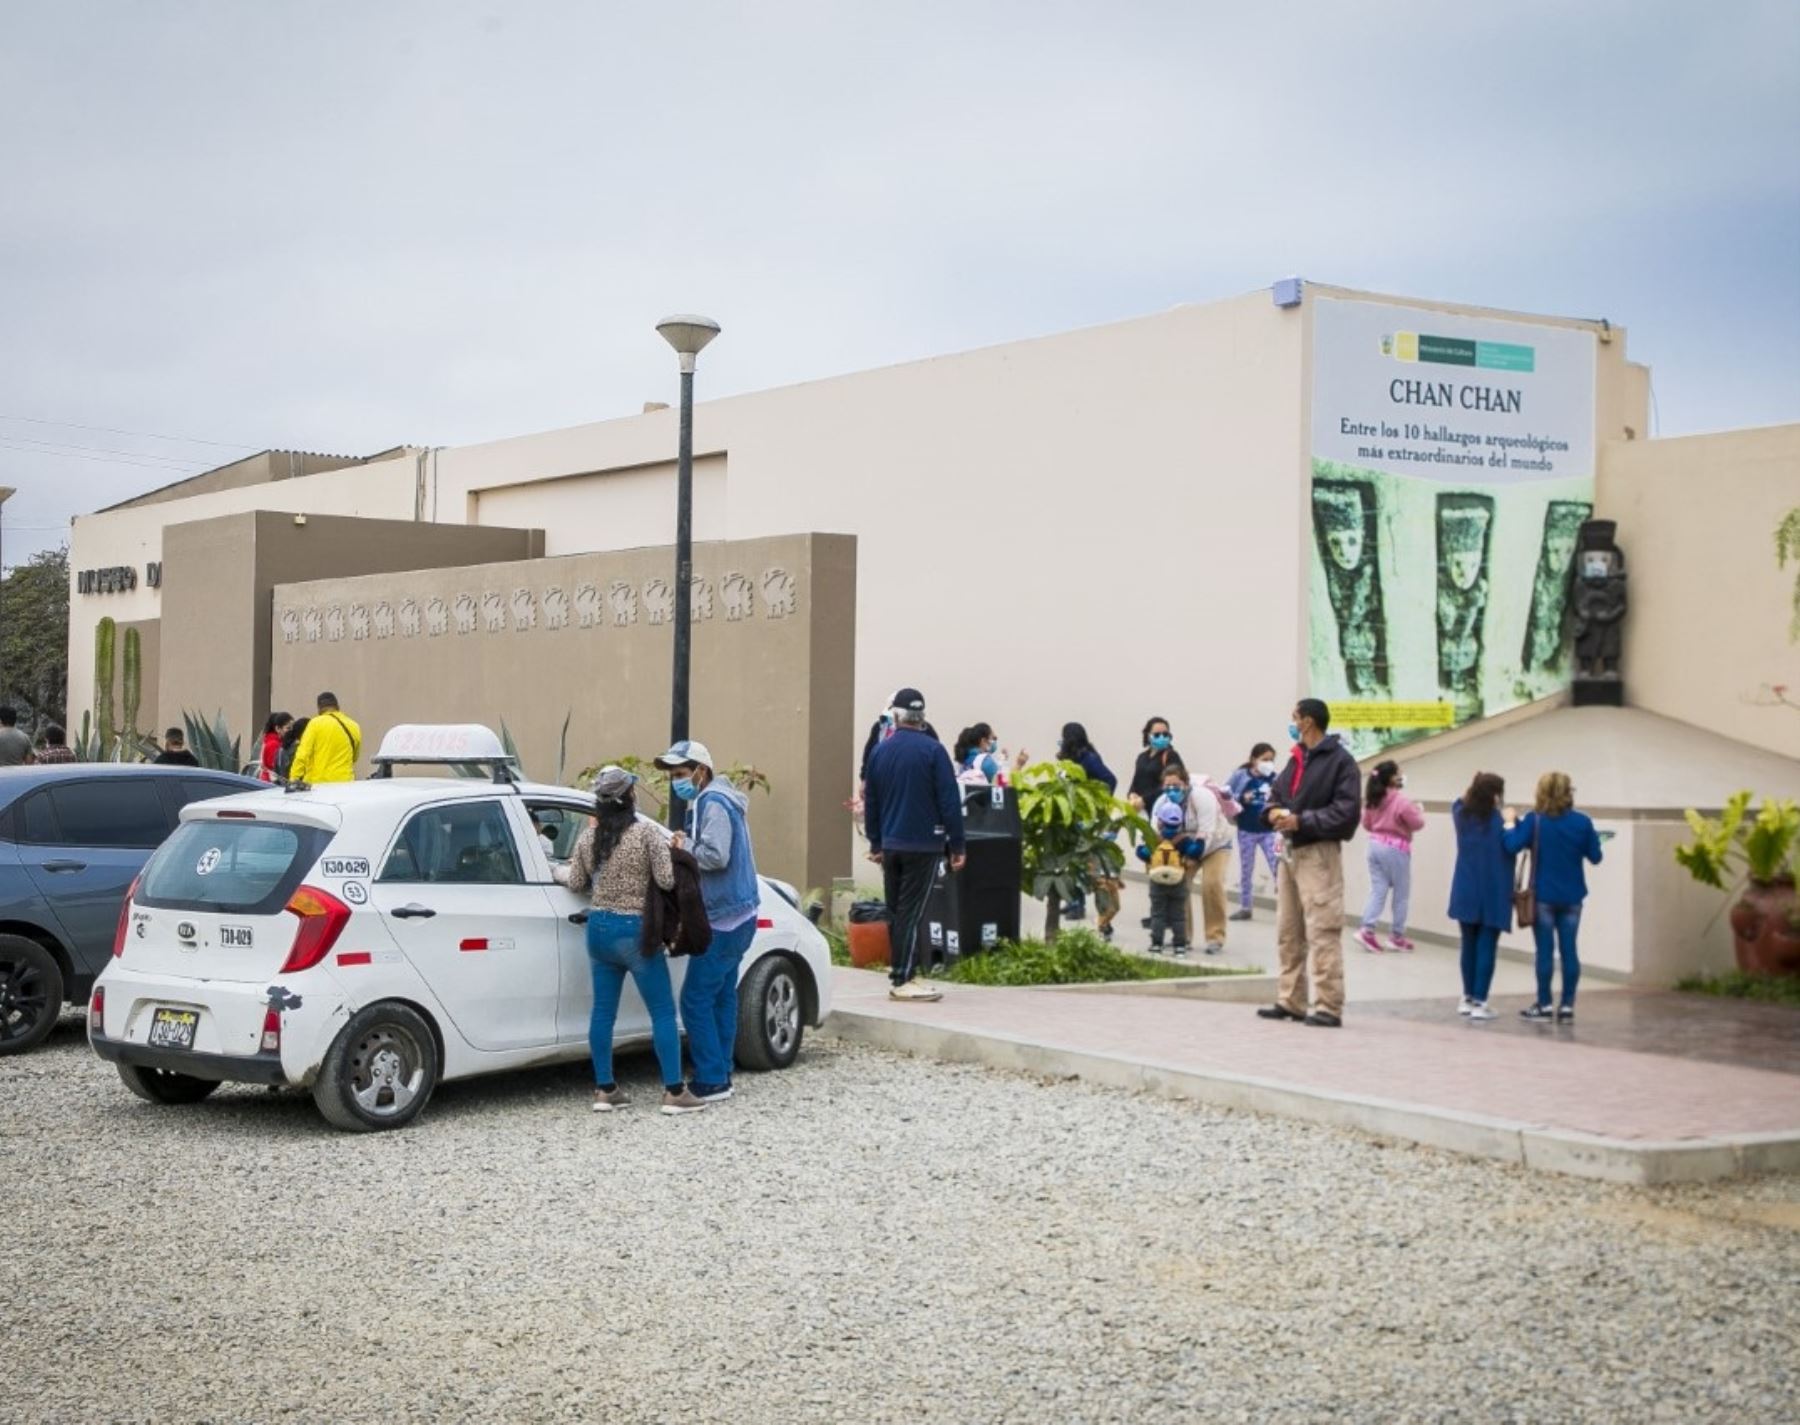 Cerca de 1,000 visitantes disfrutaron de atractivo programa cultural en el complejo arqueológico Chan Chan, en Trujillo, como parte de las actividades del programa Museos Abiertos del Ministerio de Cultura. ANDINA/Difusión